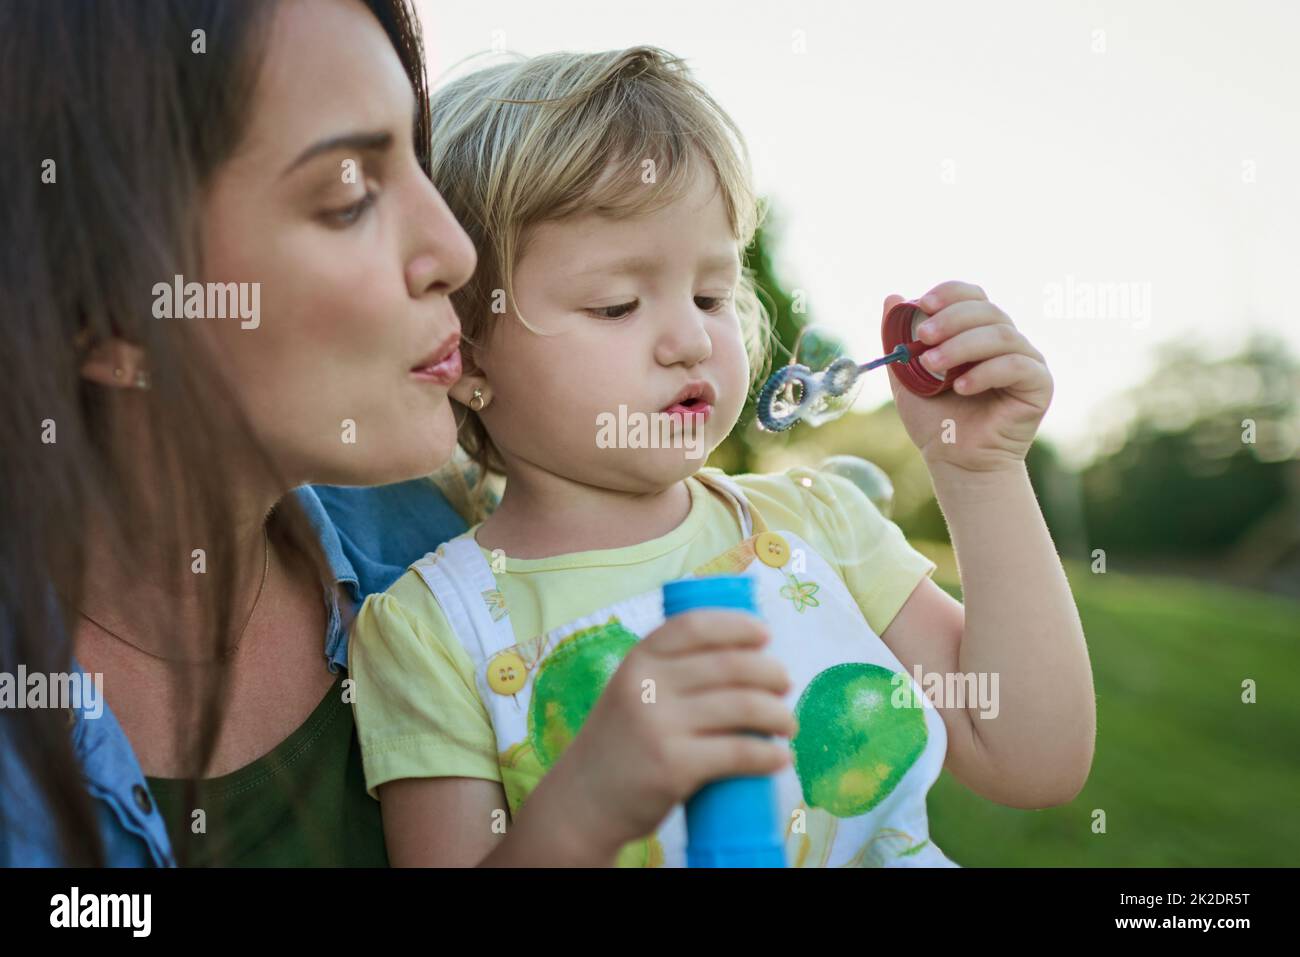 Lasst uns eine große Blase zusammenblasen. Aufnahme einer Mutter und ihrer kleinen Tochter, die im Freien Blasen blasen. Stockfoto